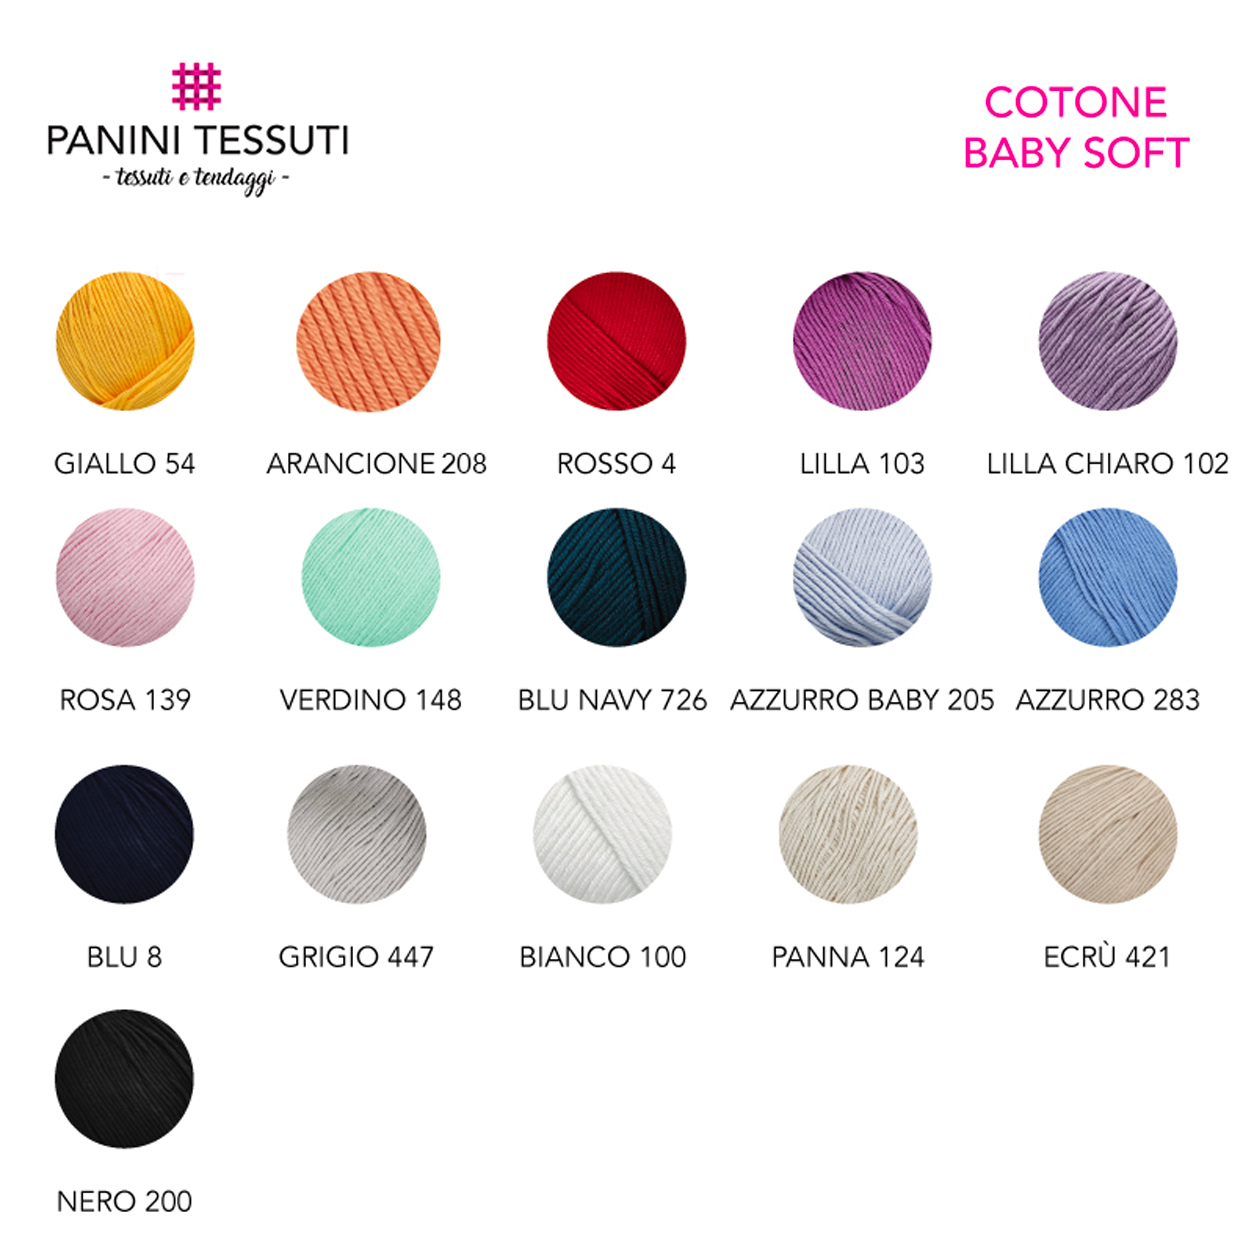 Cotone baby soft varianti colori